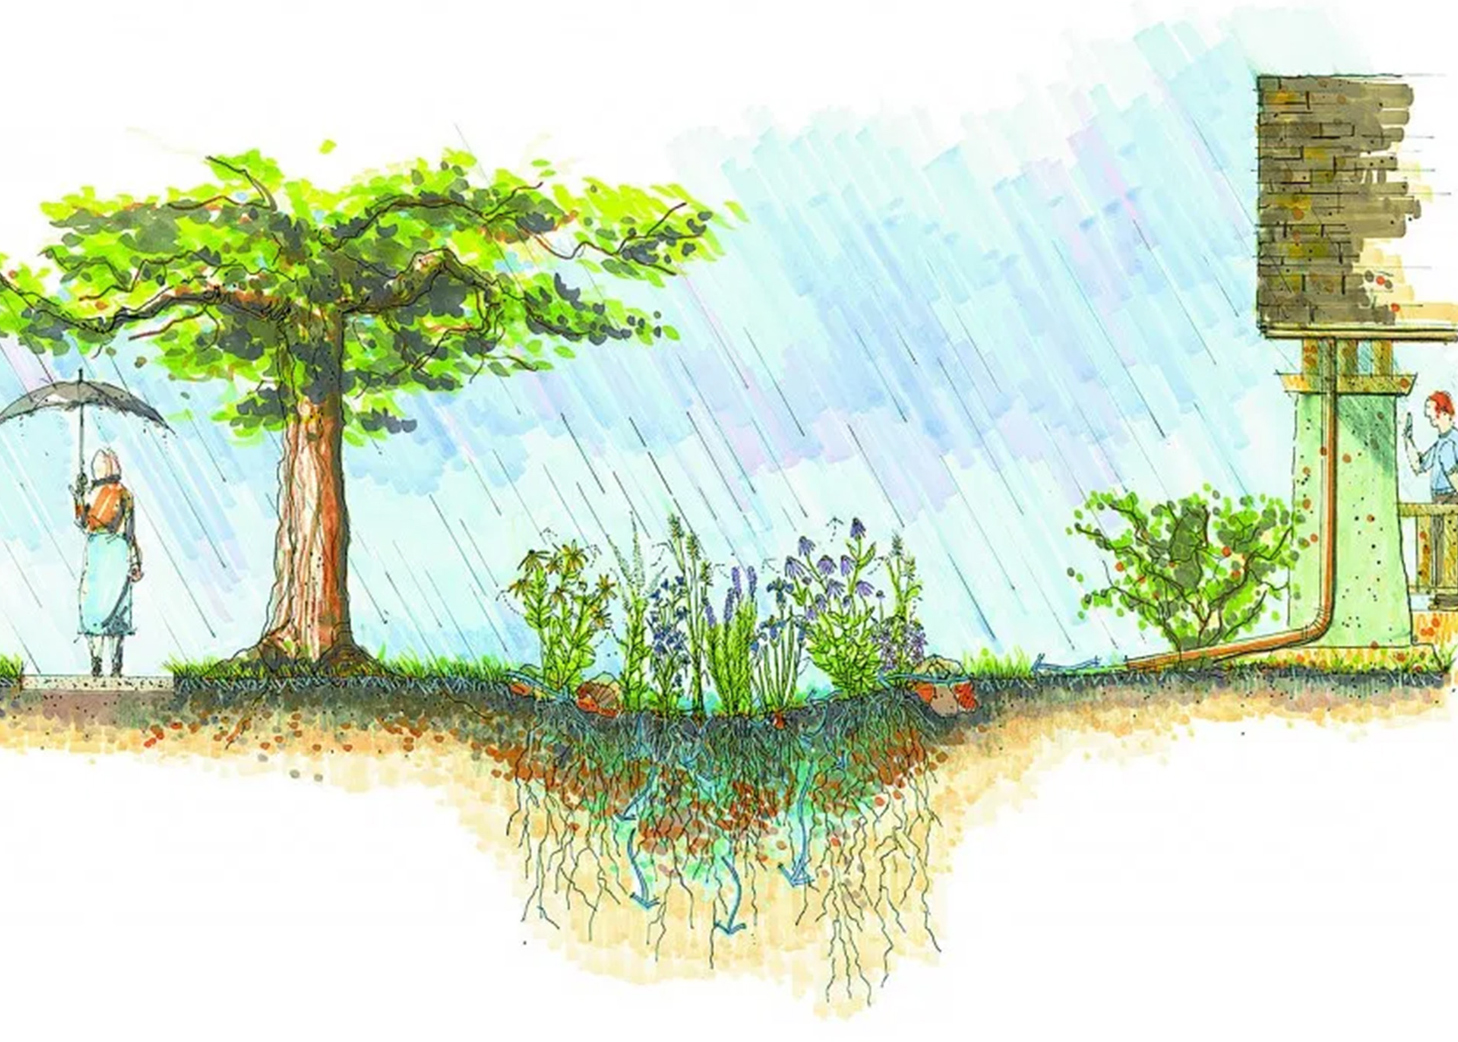 Section of a rain garden